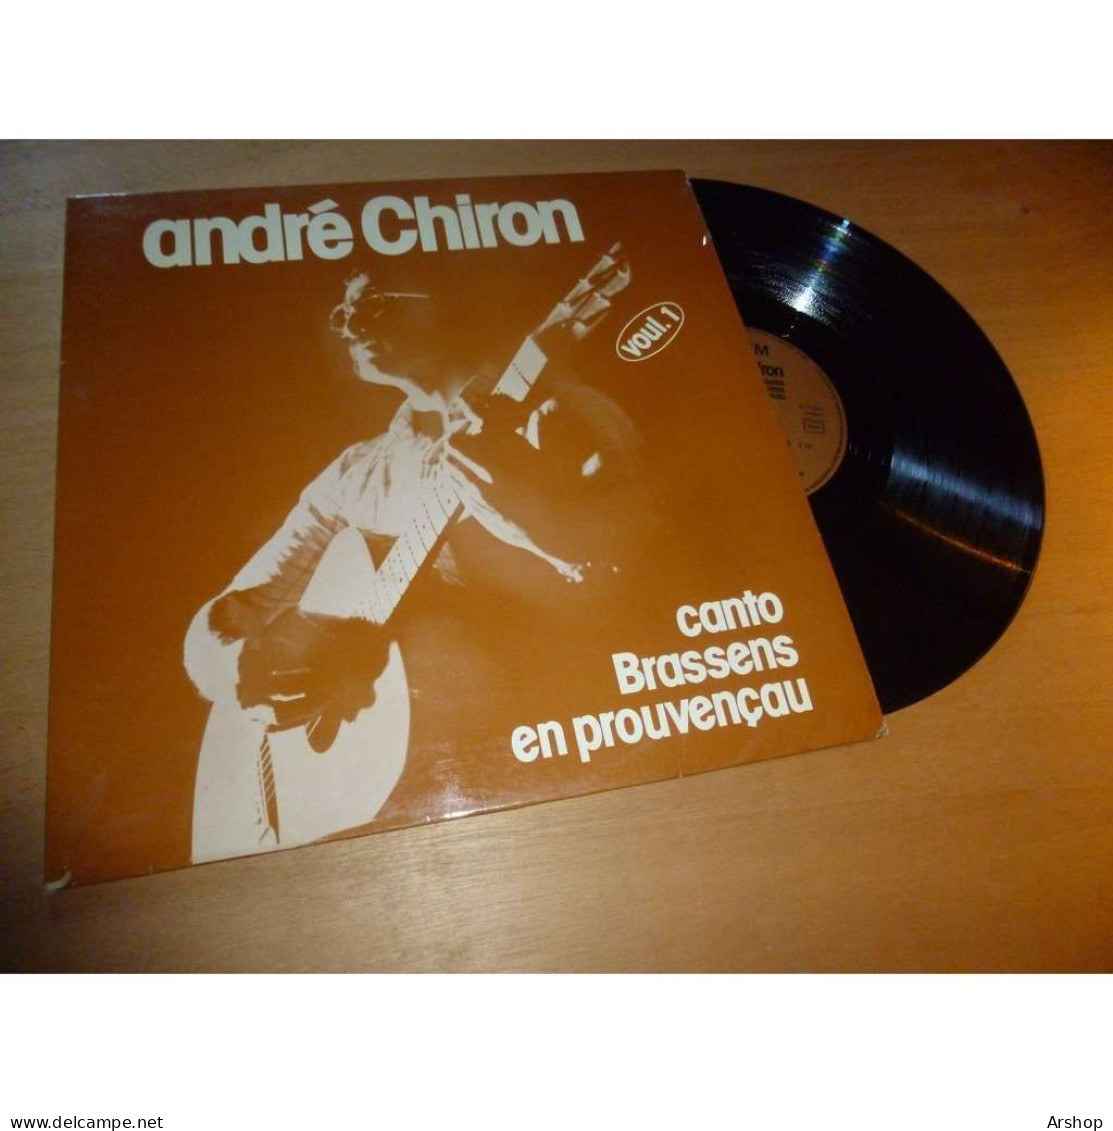 ANDRÉ CHIRON Canto GEORGES BRASSENS En Provencau - SAPEM SAP 204 Lp 1979 - Otros - Canción Francesa